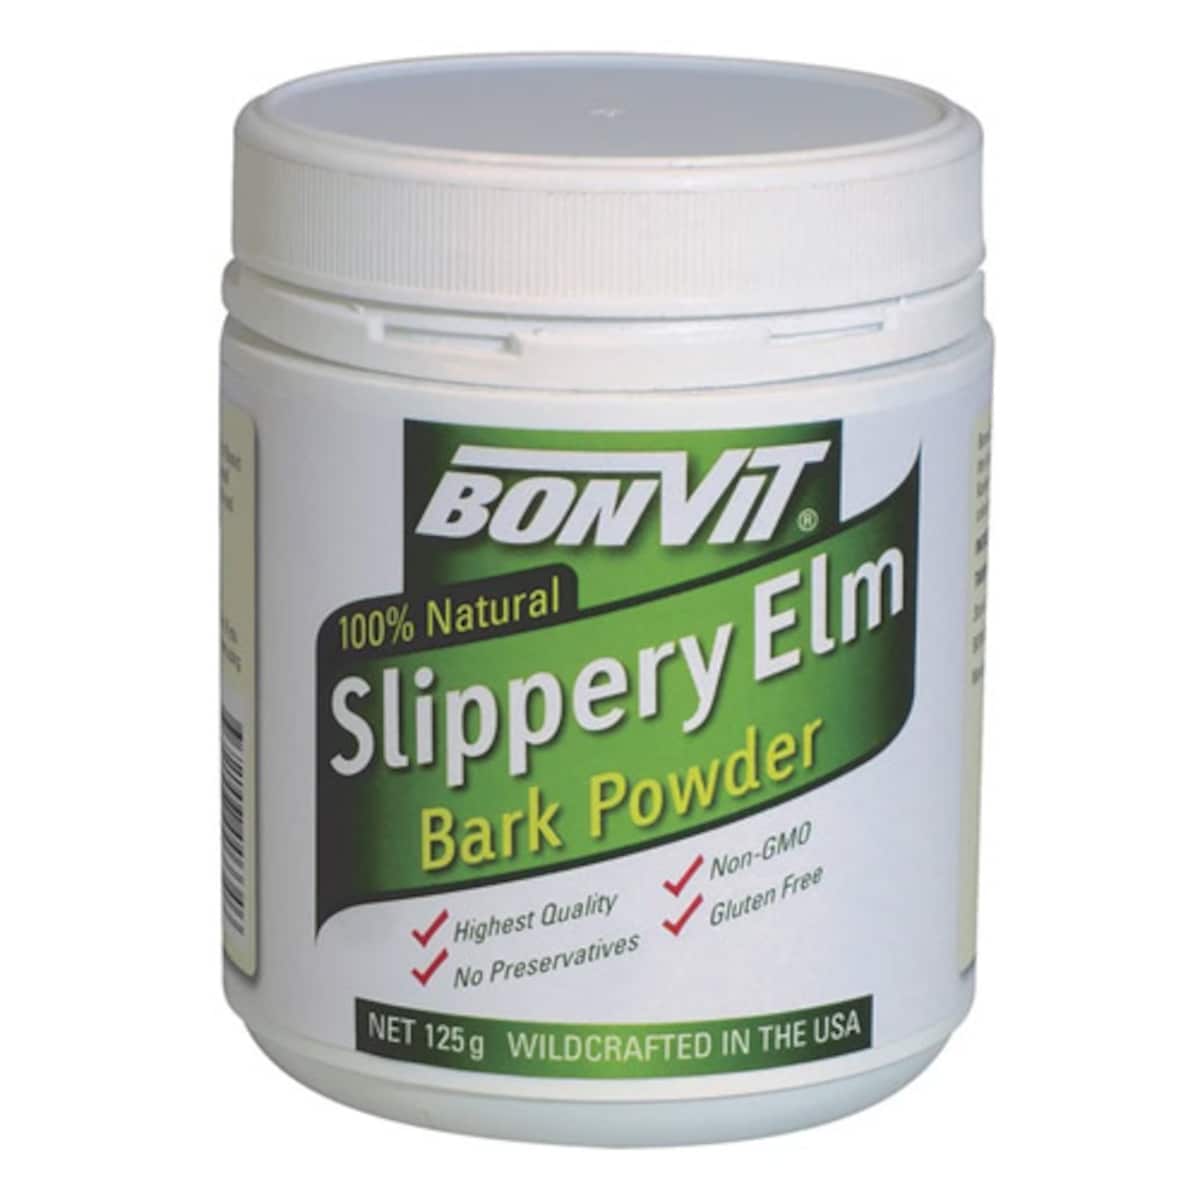 Bonvit Natural Slippery Elm Bark Powder 125g